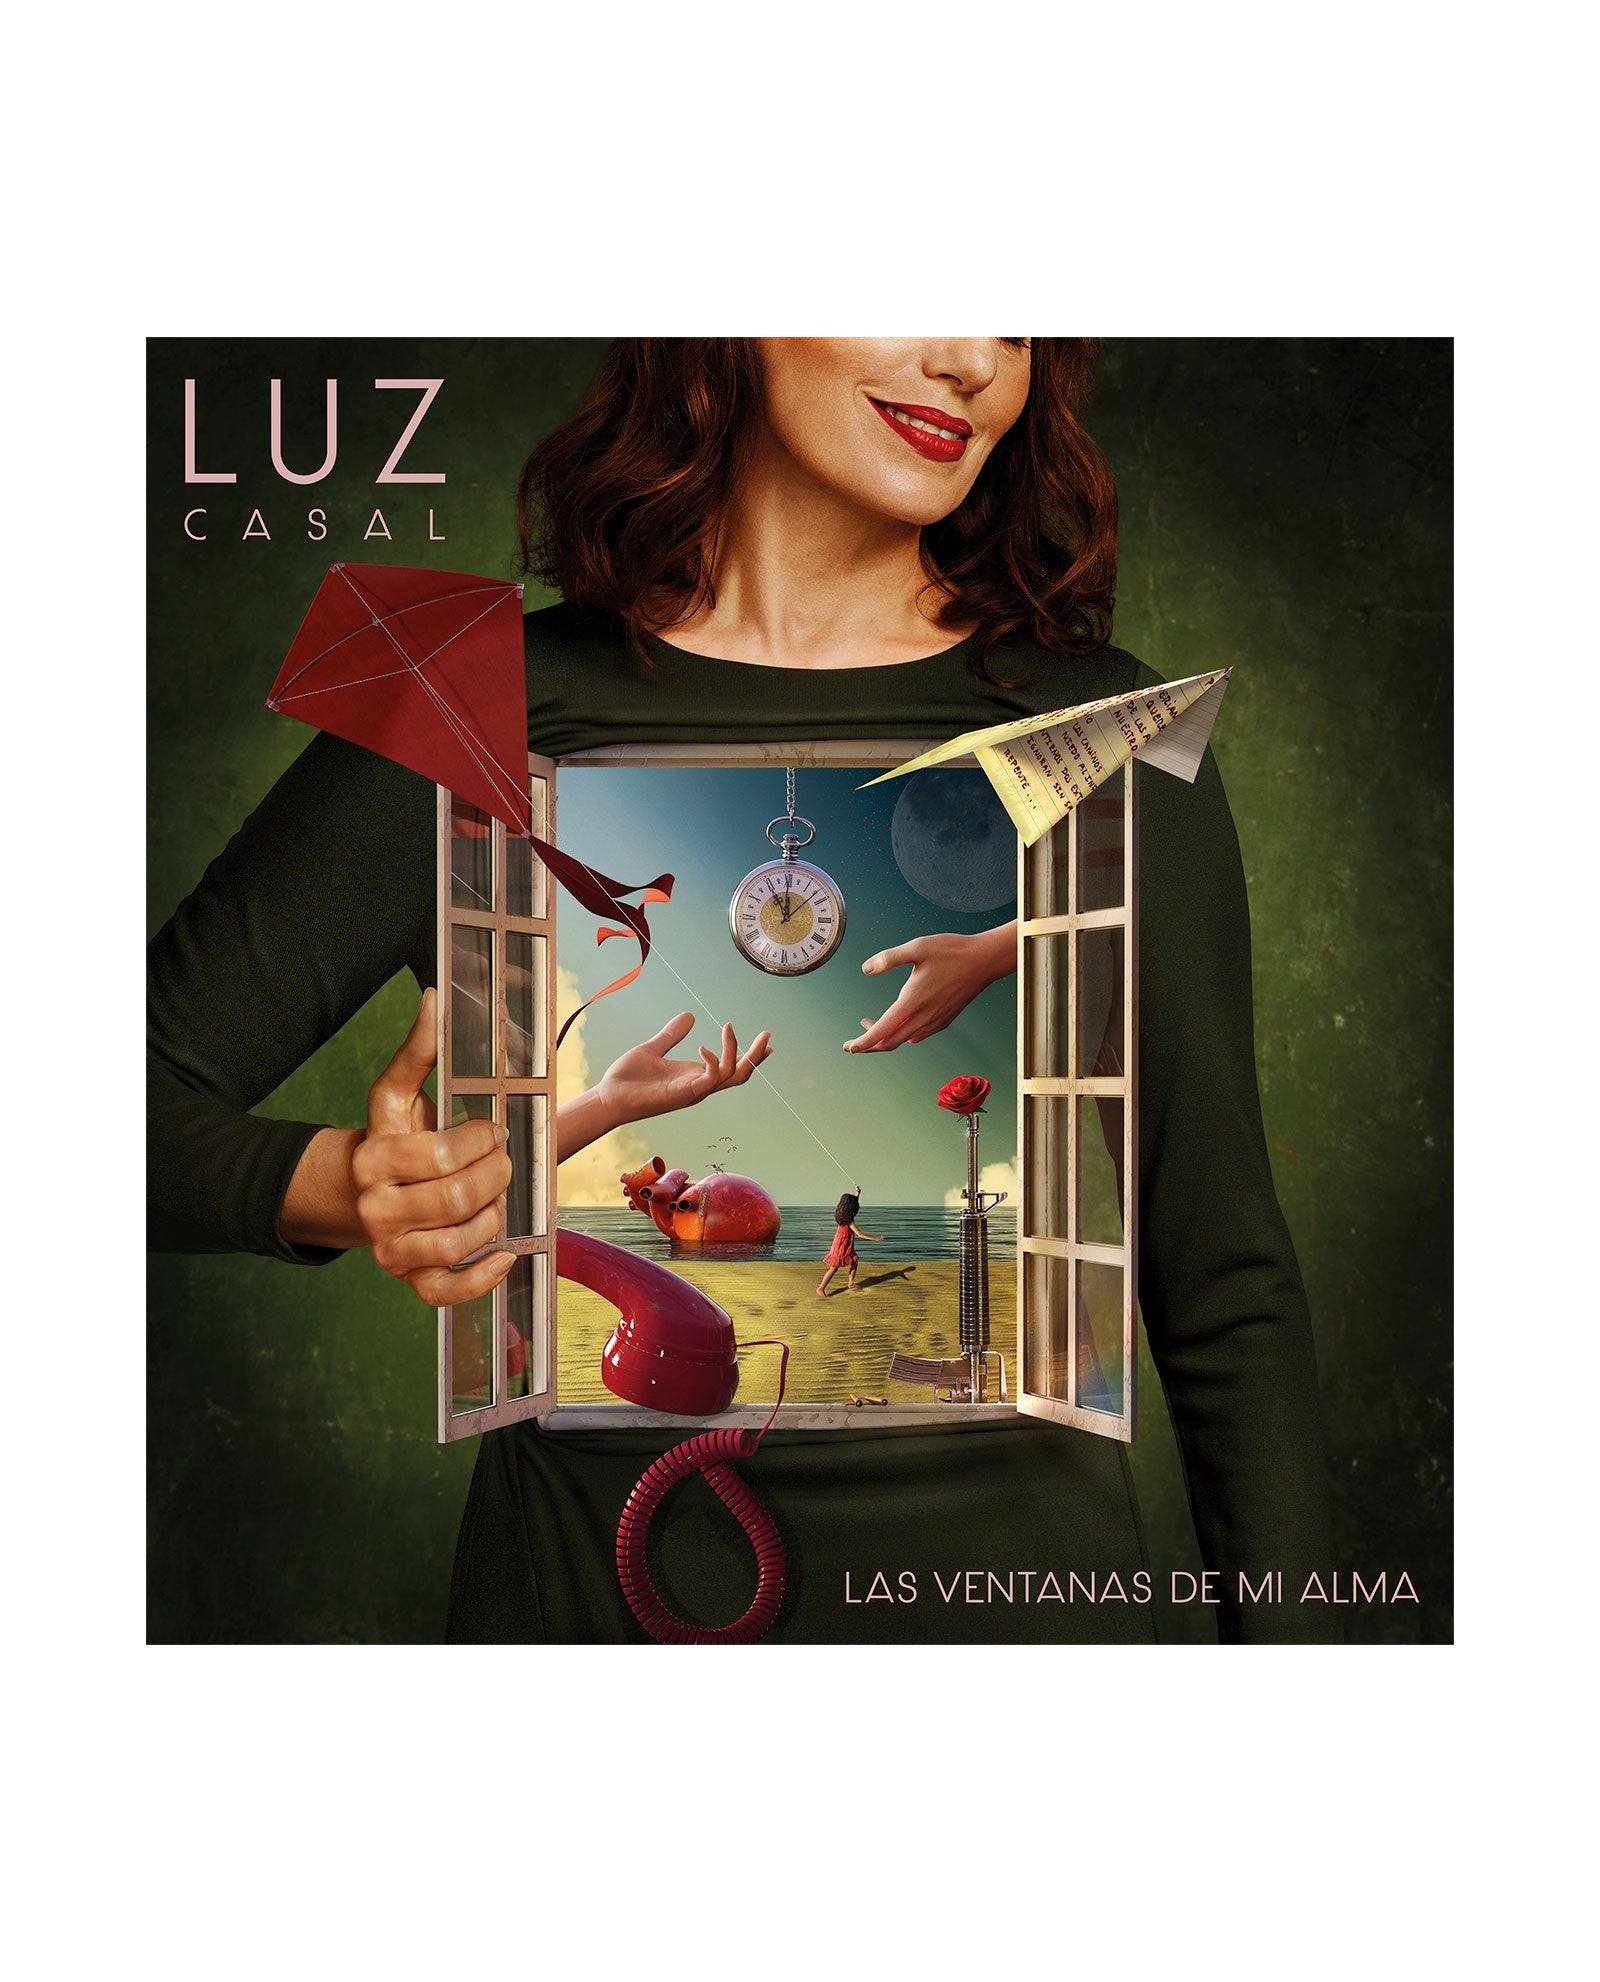 Luz Casal - CD "Las Ventanas de mi Alma" - Rocktud - Rocktud